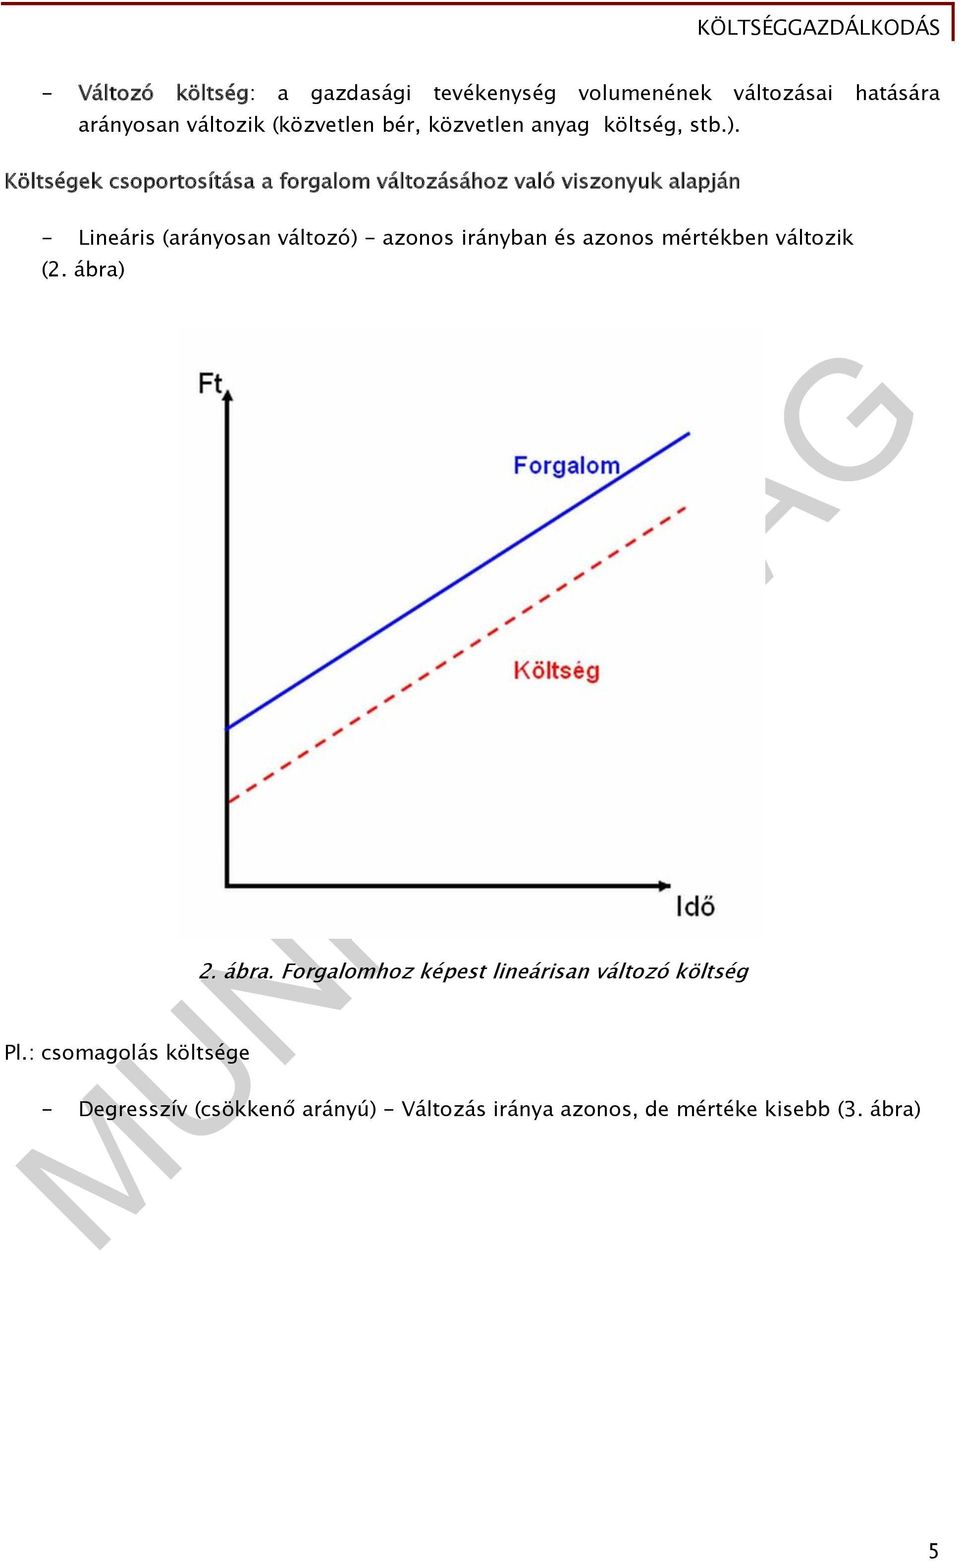 Költségek csoportosítása a forgalom változásához való viszonyuk alapján - Lineáris (arányosan változó) - azonos